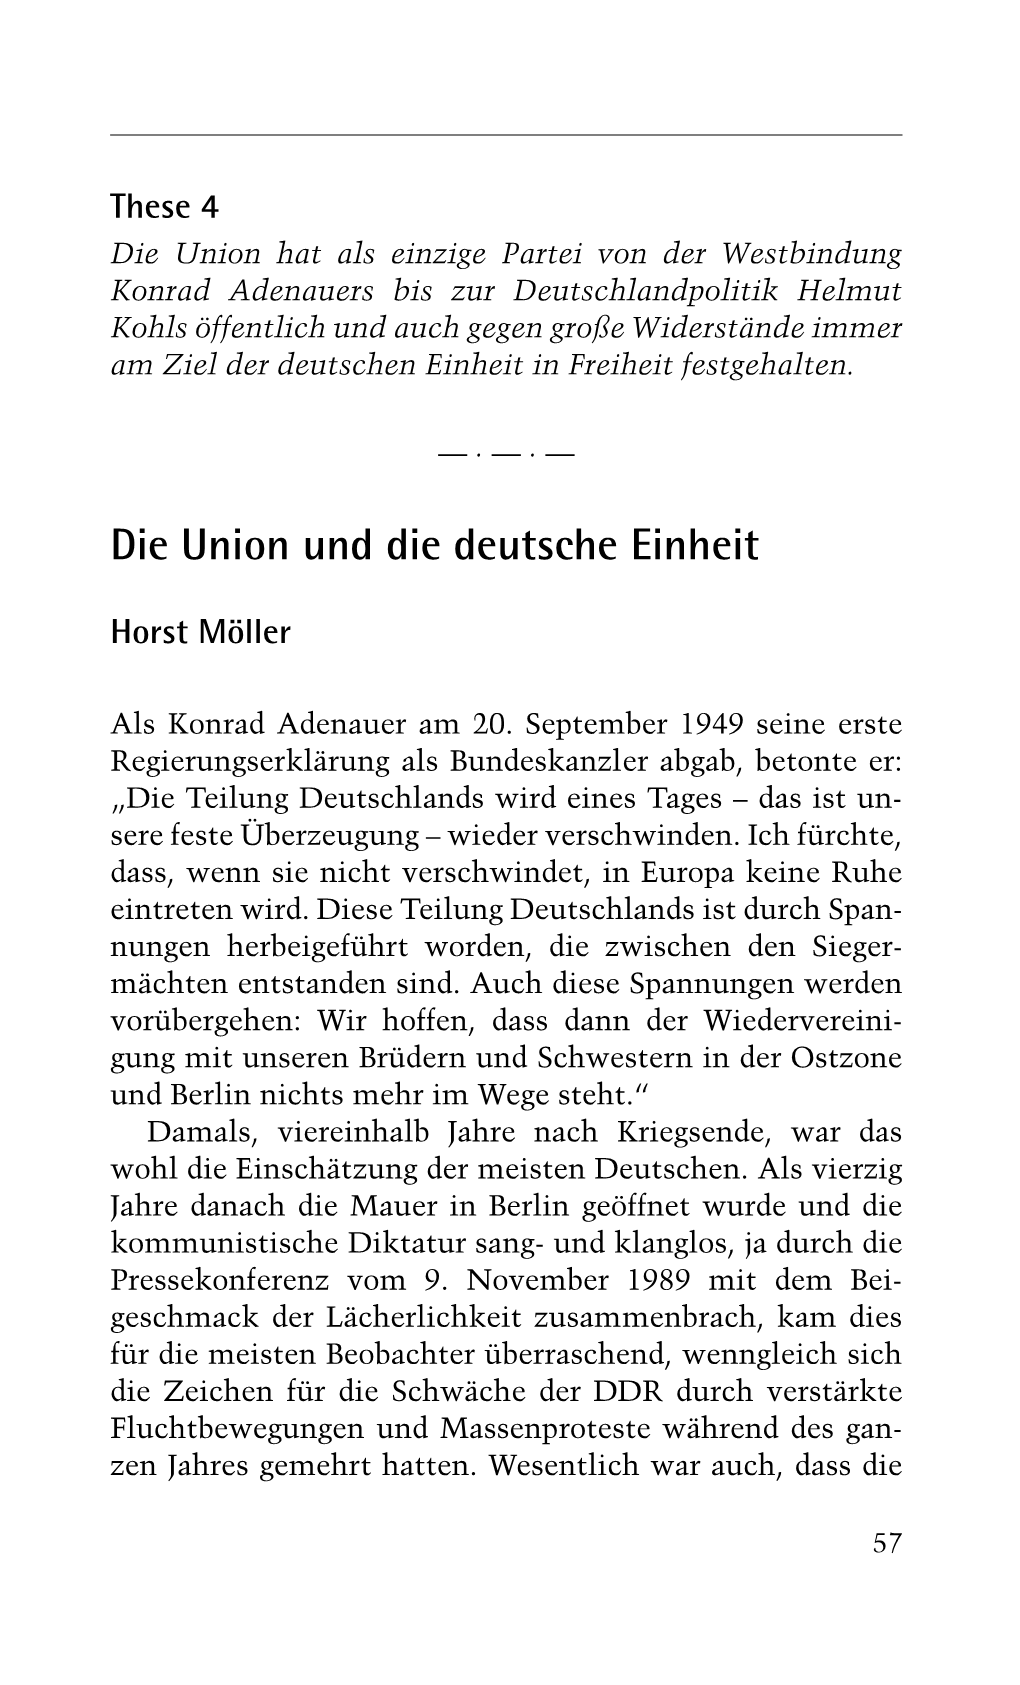 Die Union Und Die Deutsche Einheit